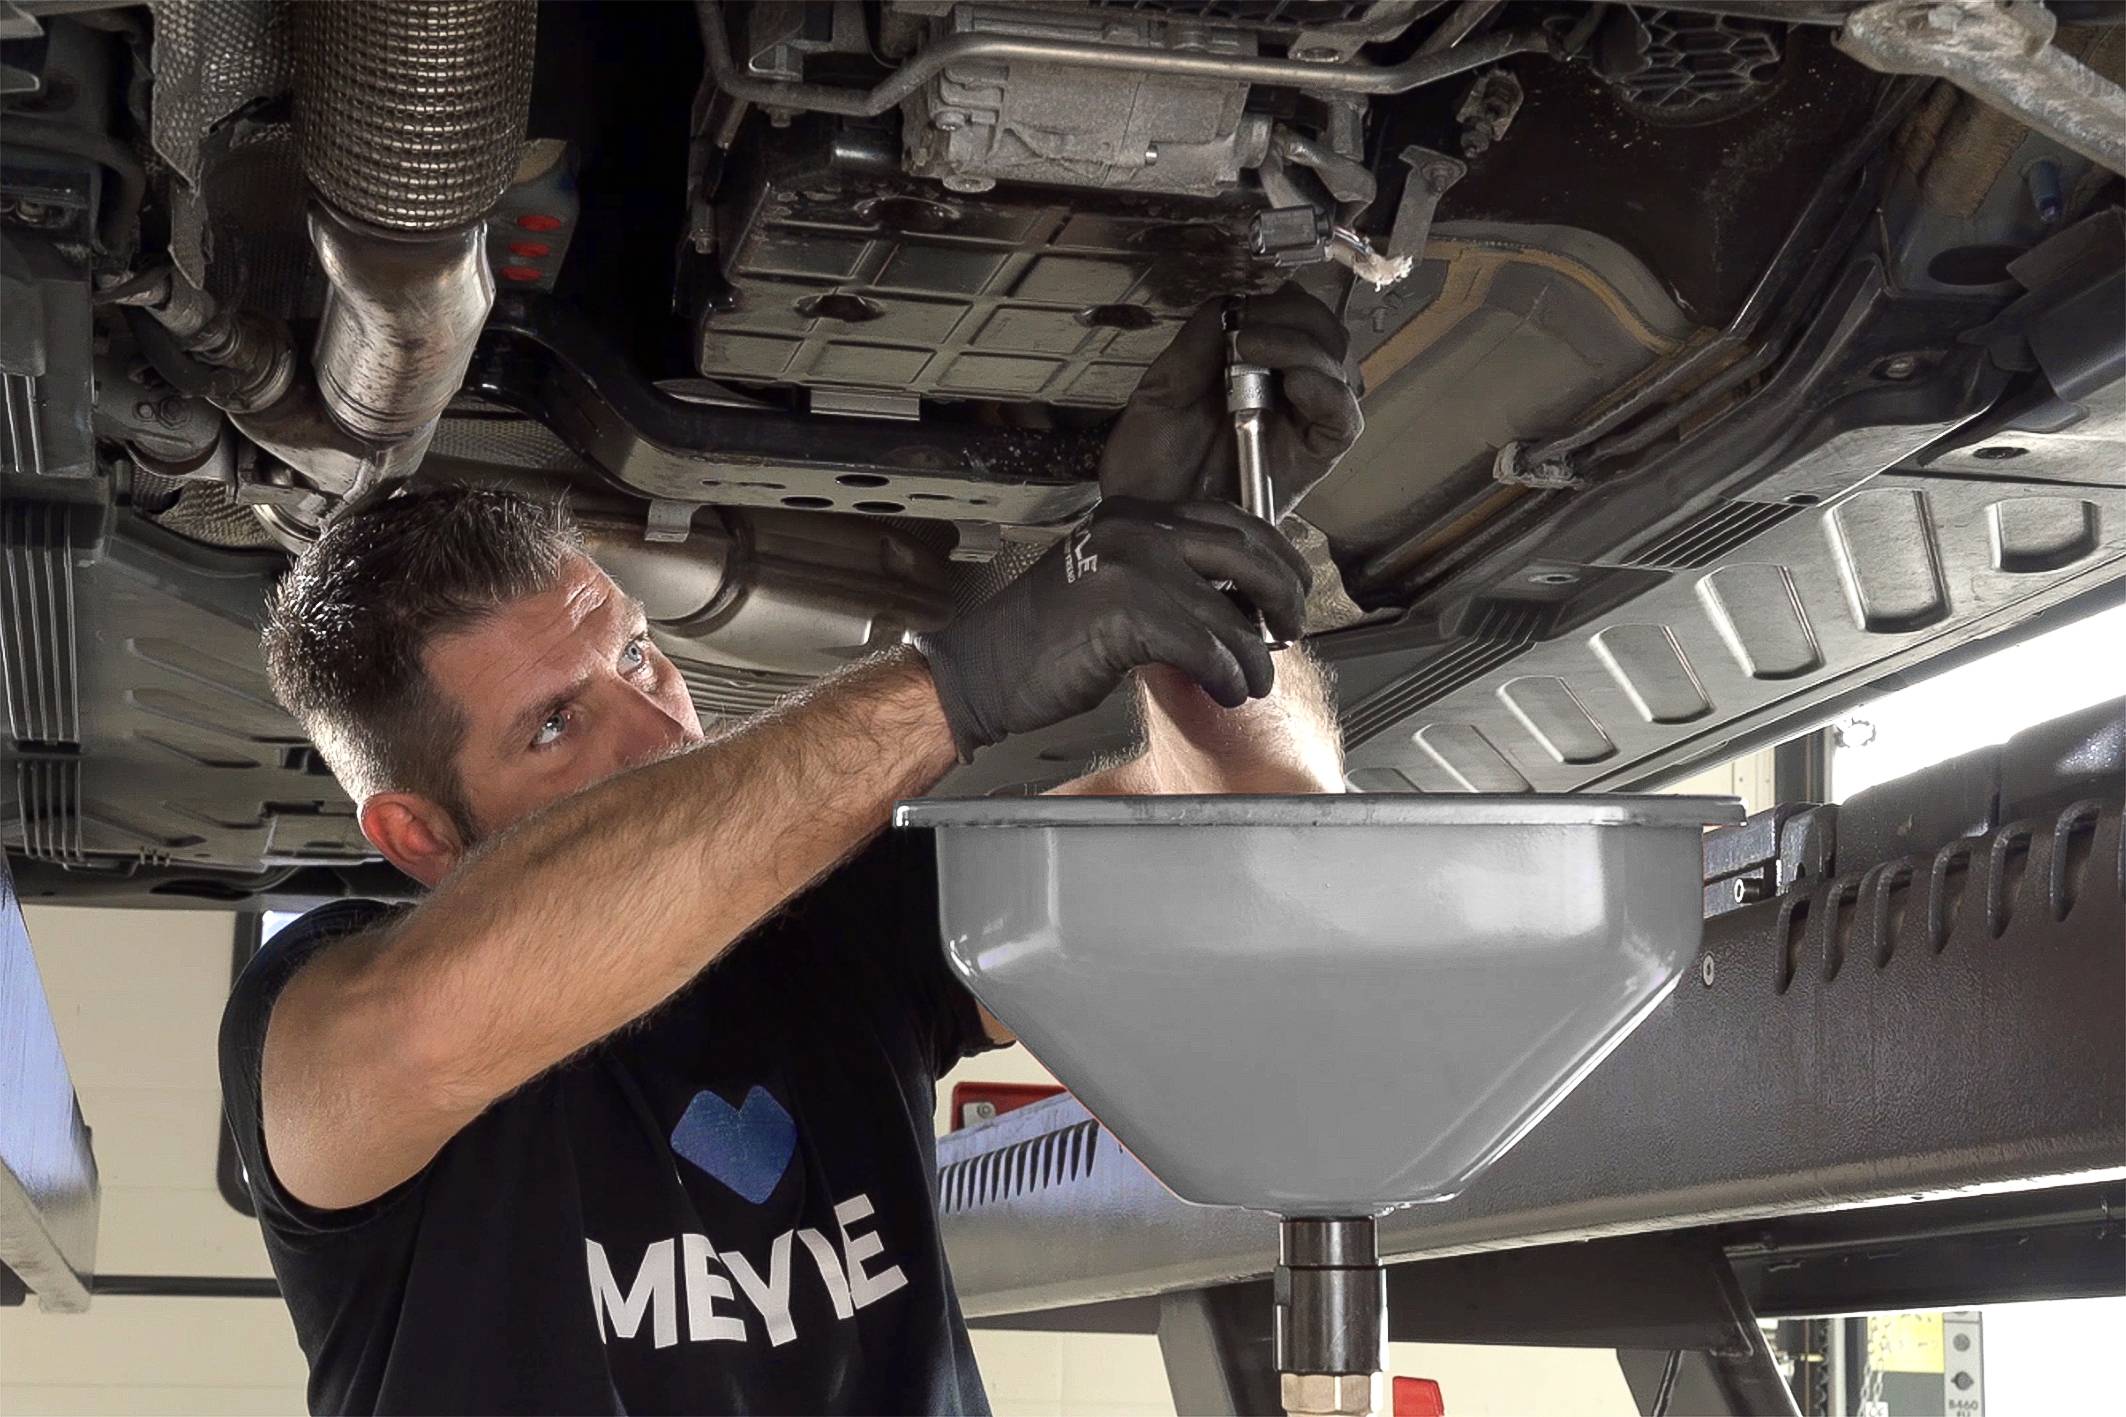 Как удалить лишнее масло из двигателя? - ремонт авто своими руками avtoservis-rus.ru